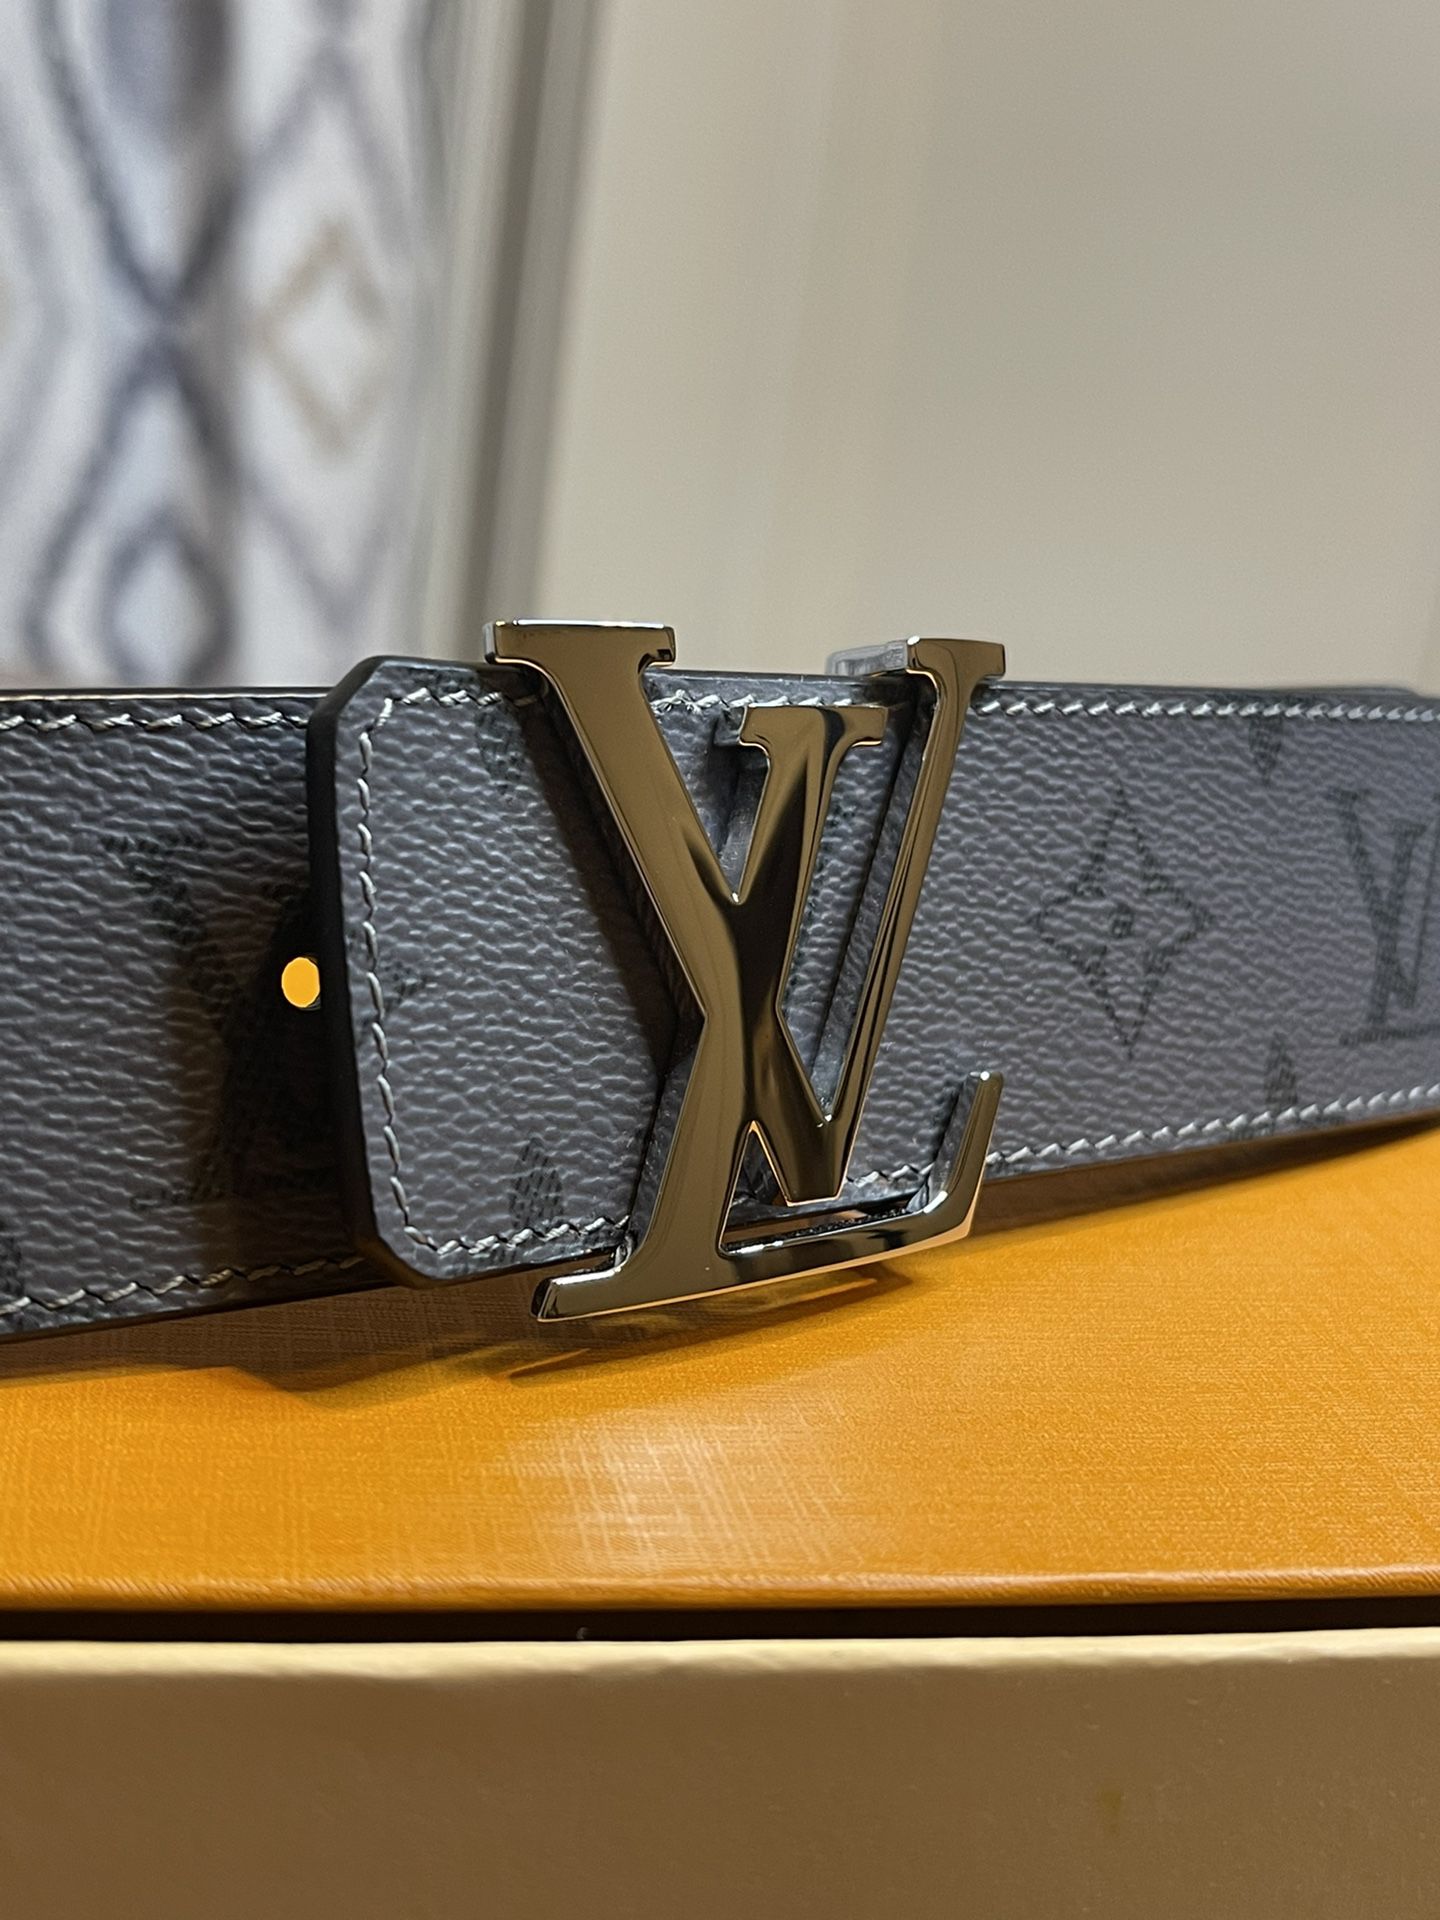 Louis Vuitton Belt (Men) for Sale in Union City, NJ - OfferUp